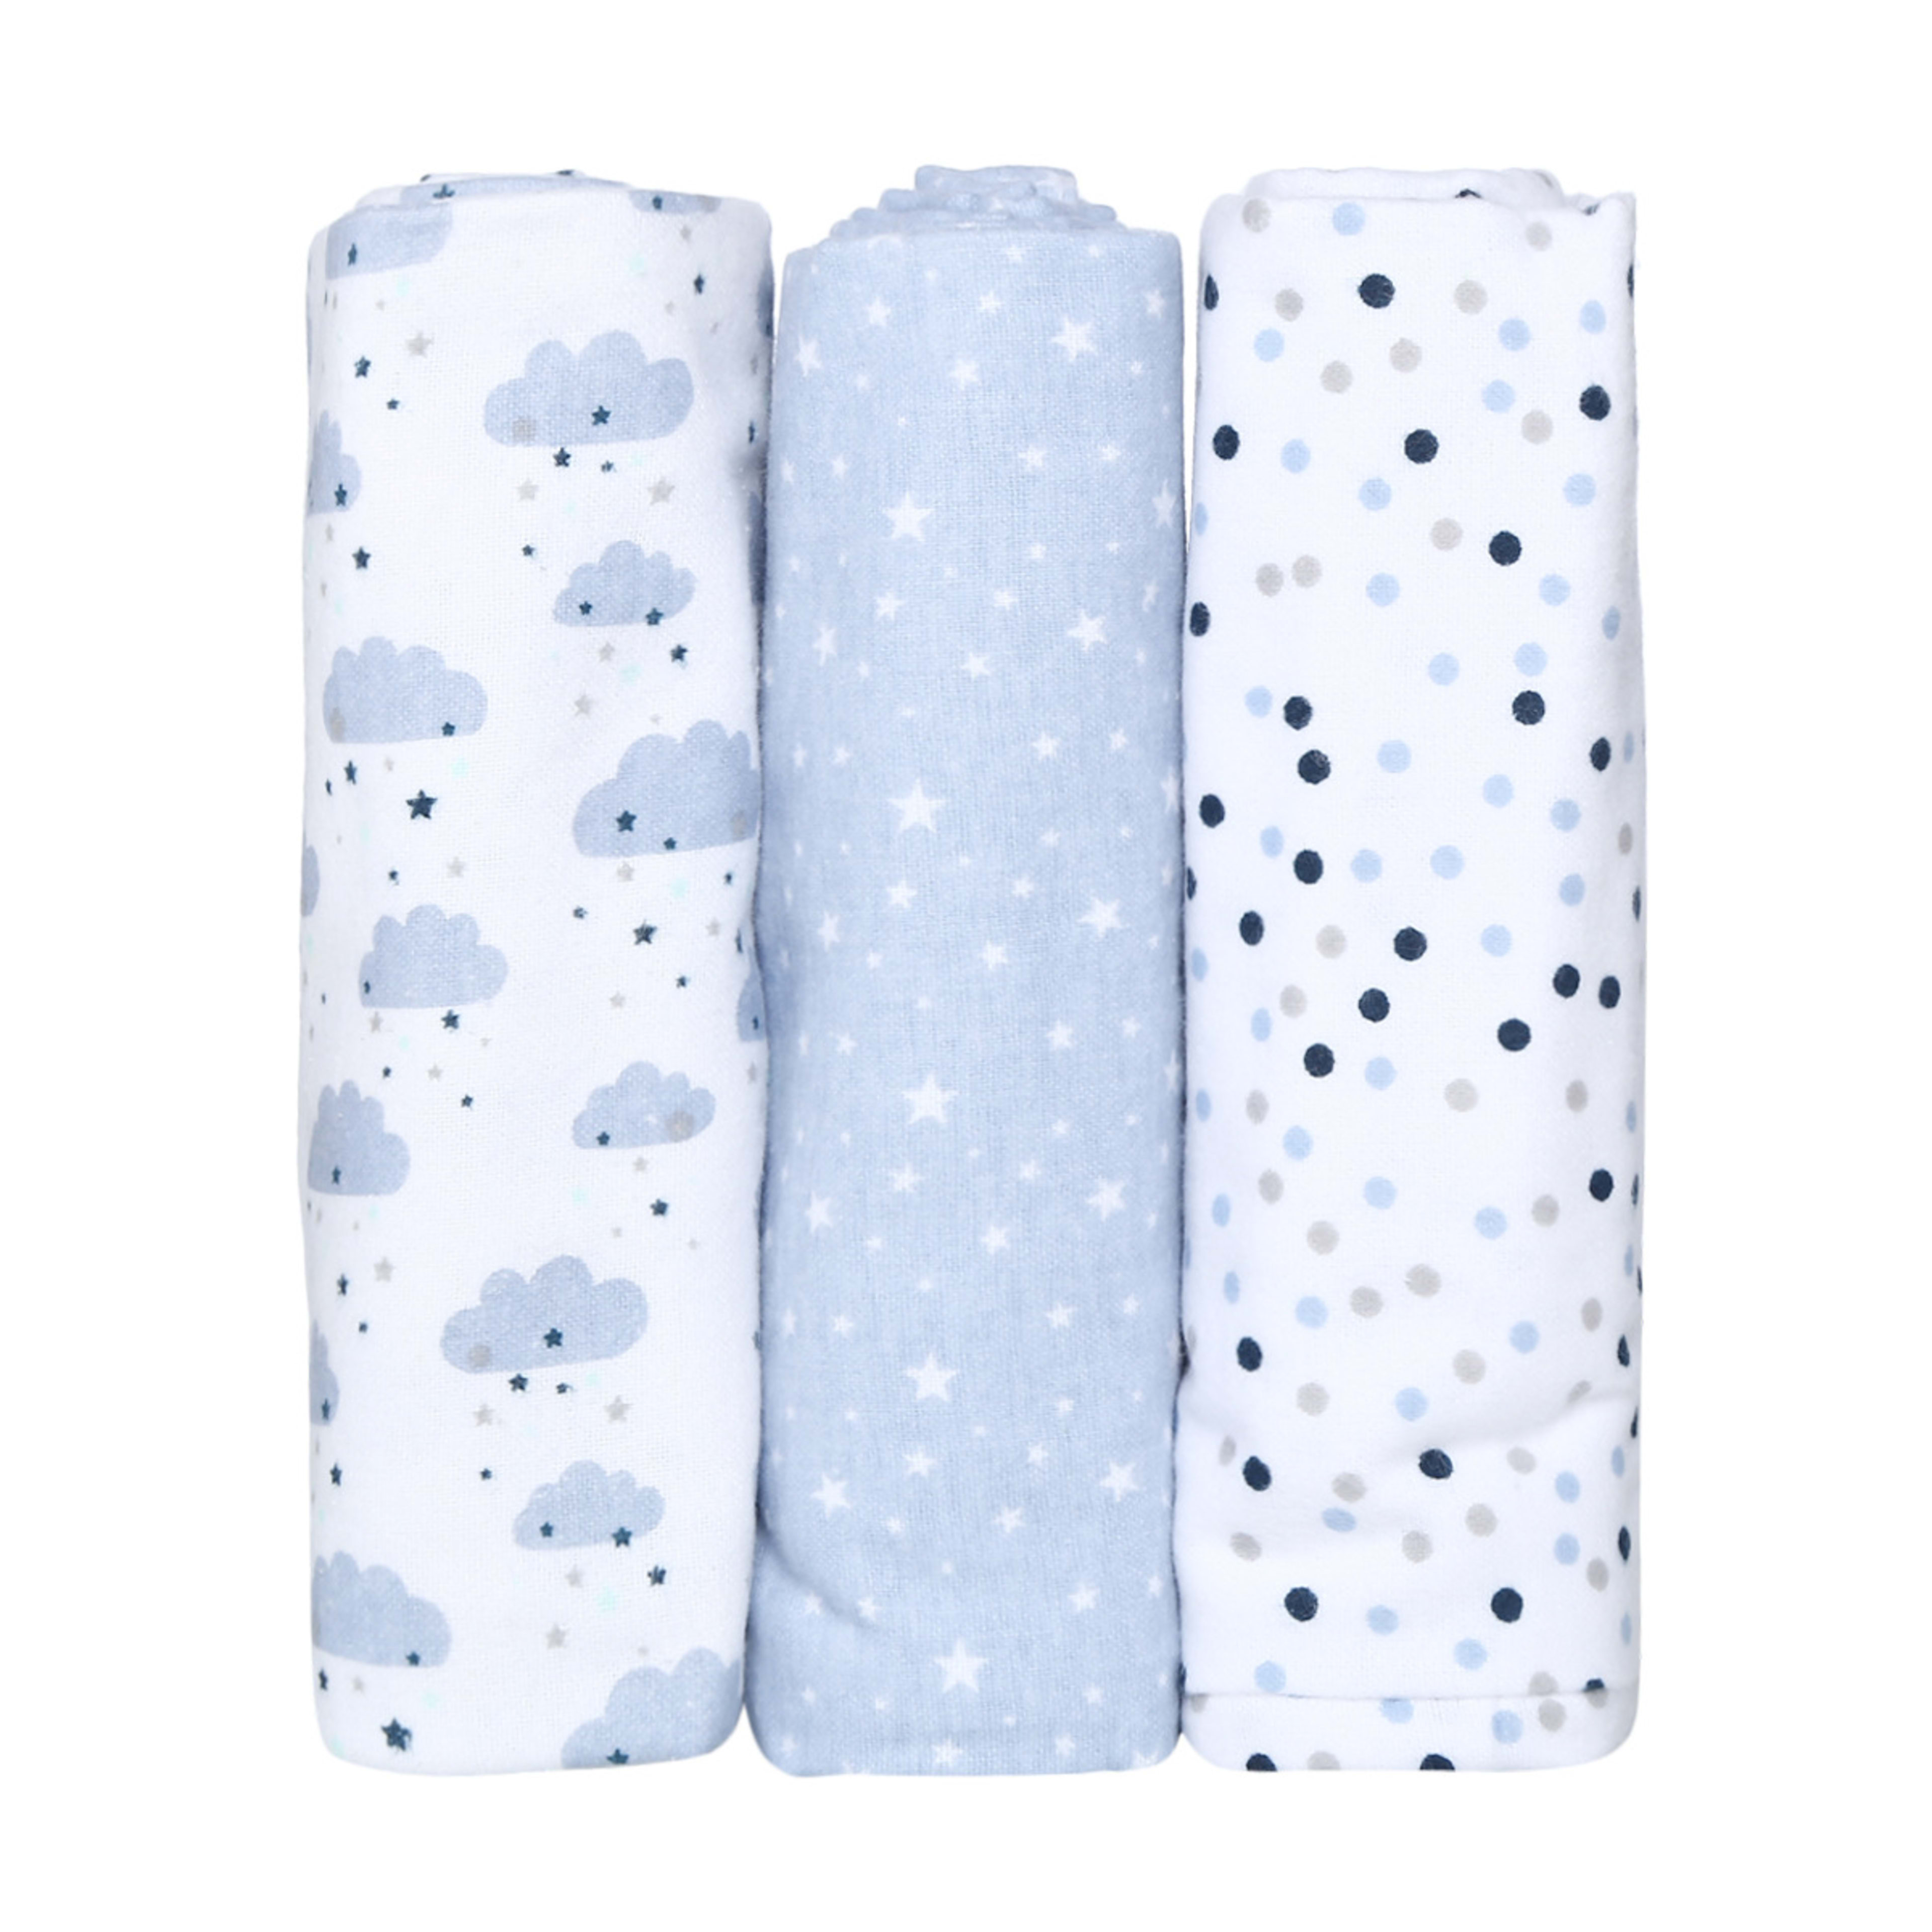 3 Pack Flannelette Wraps - Blue Confetti - Kmart